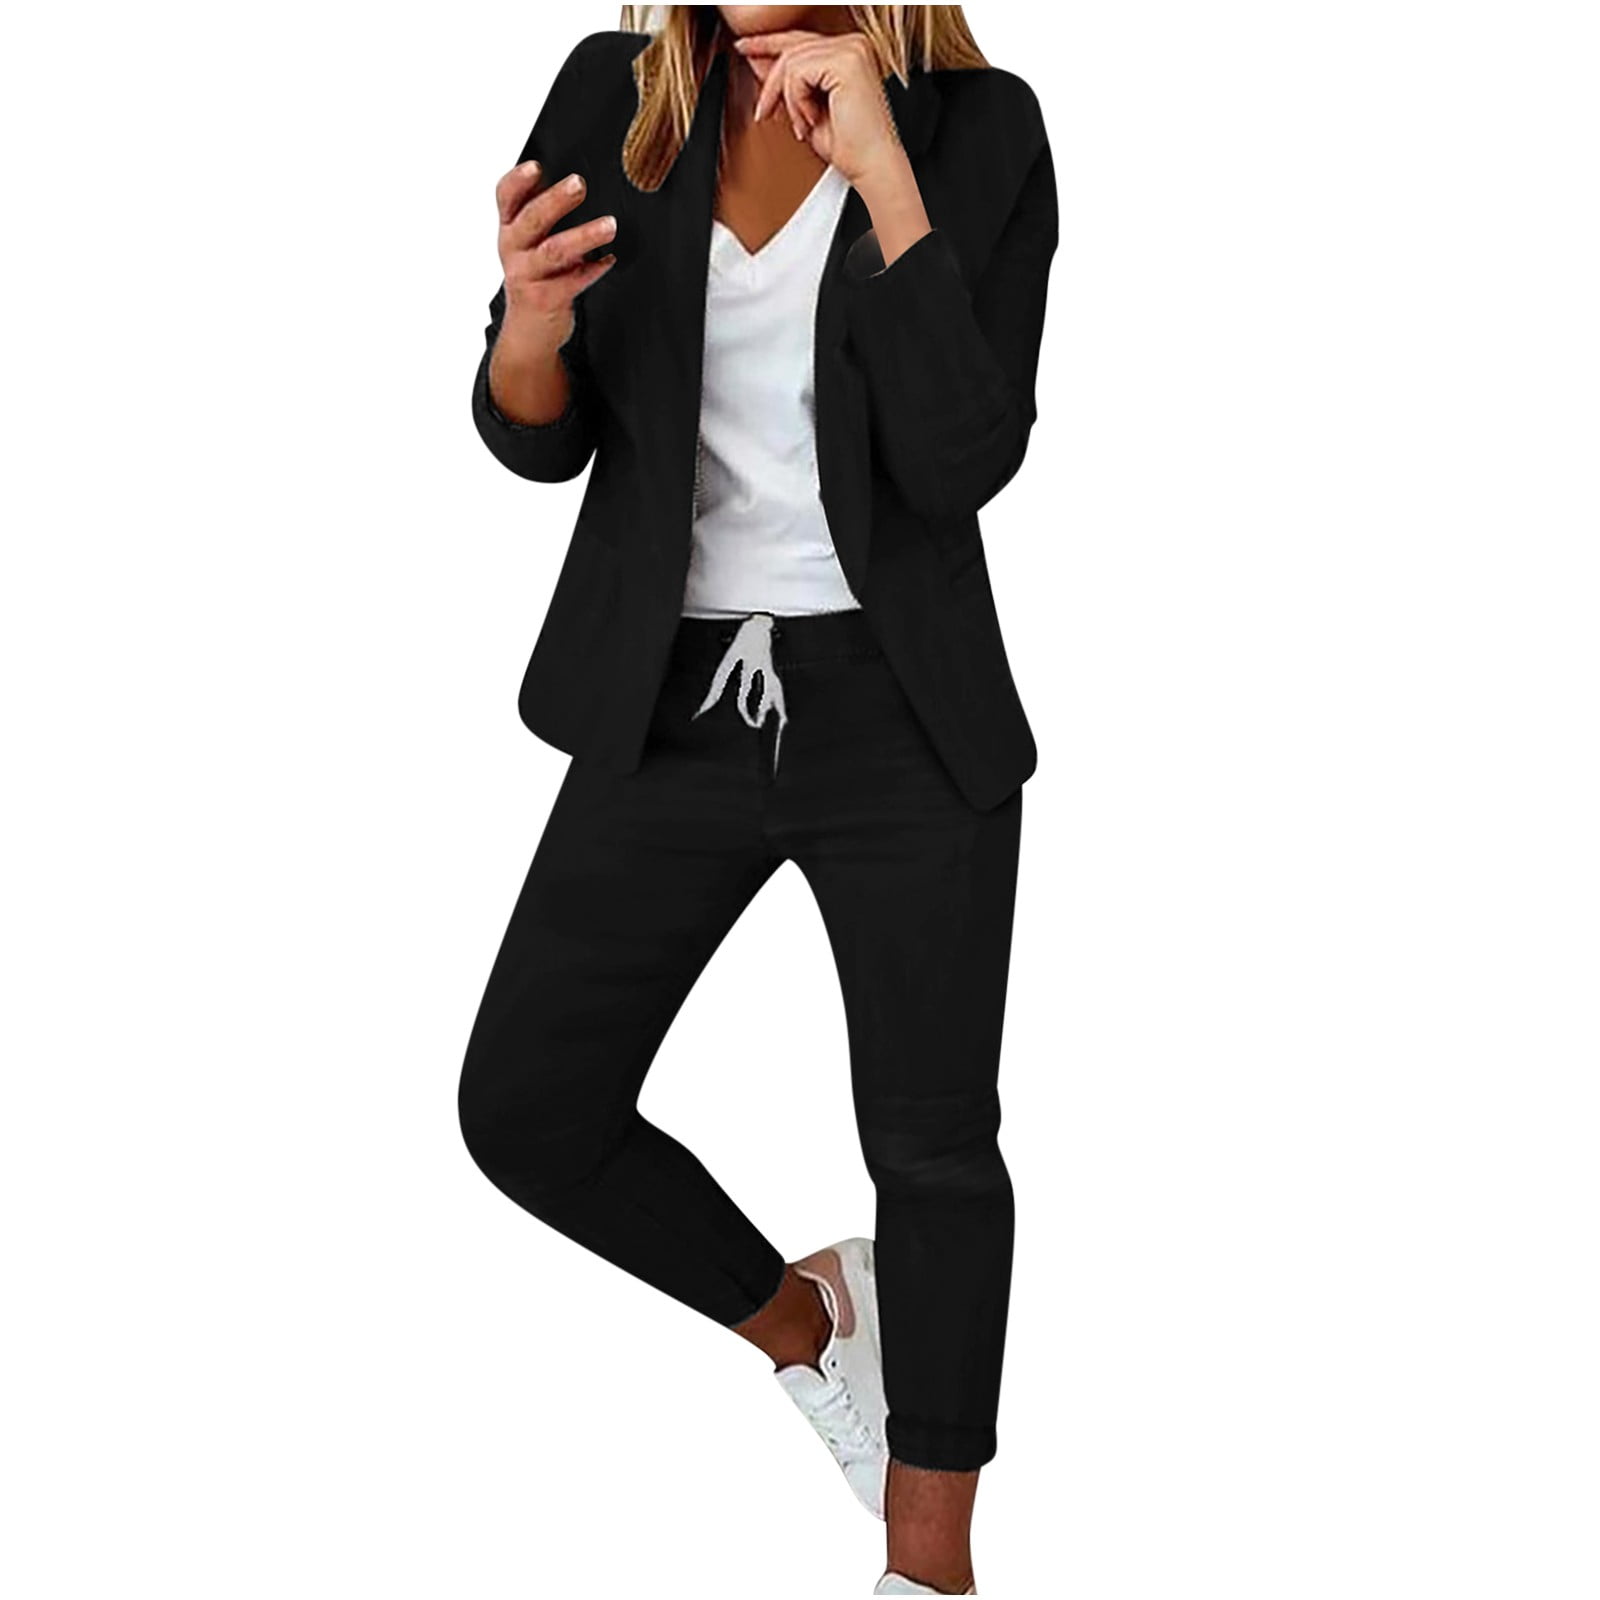 Women's Long Sleeve Solid Suit Pants Casual Elegant Business Suit Sets ...